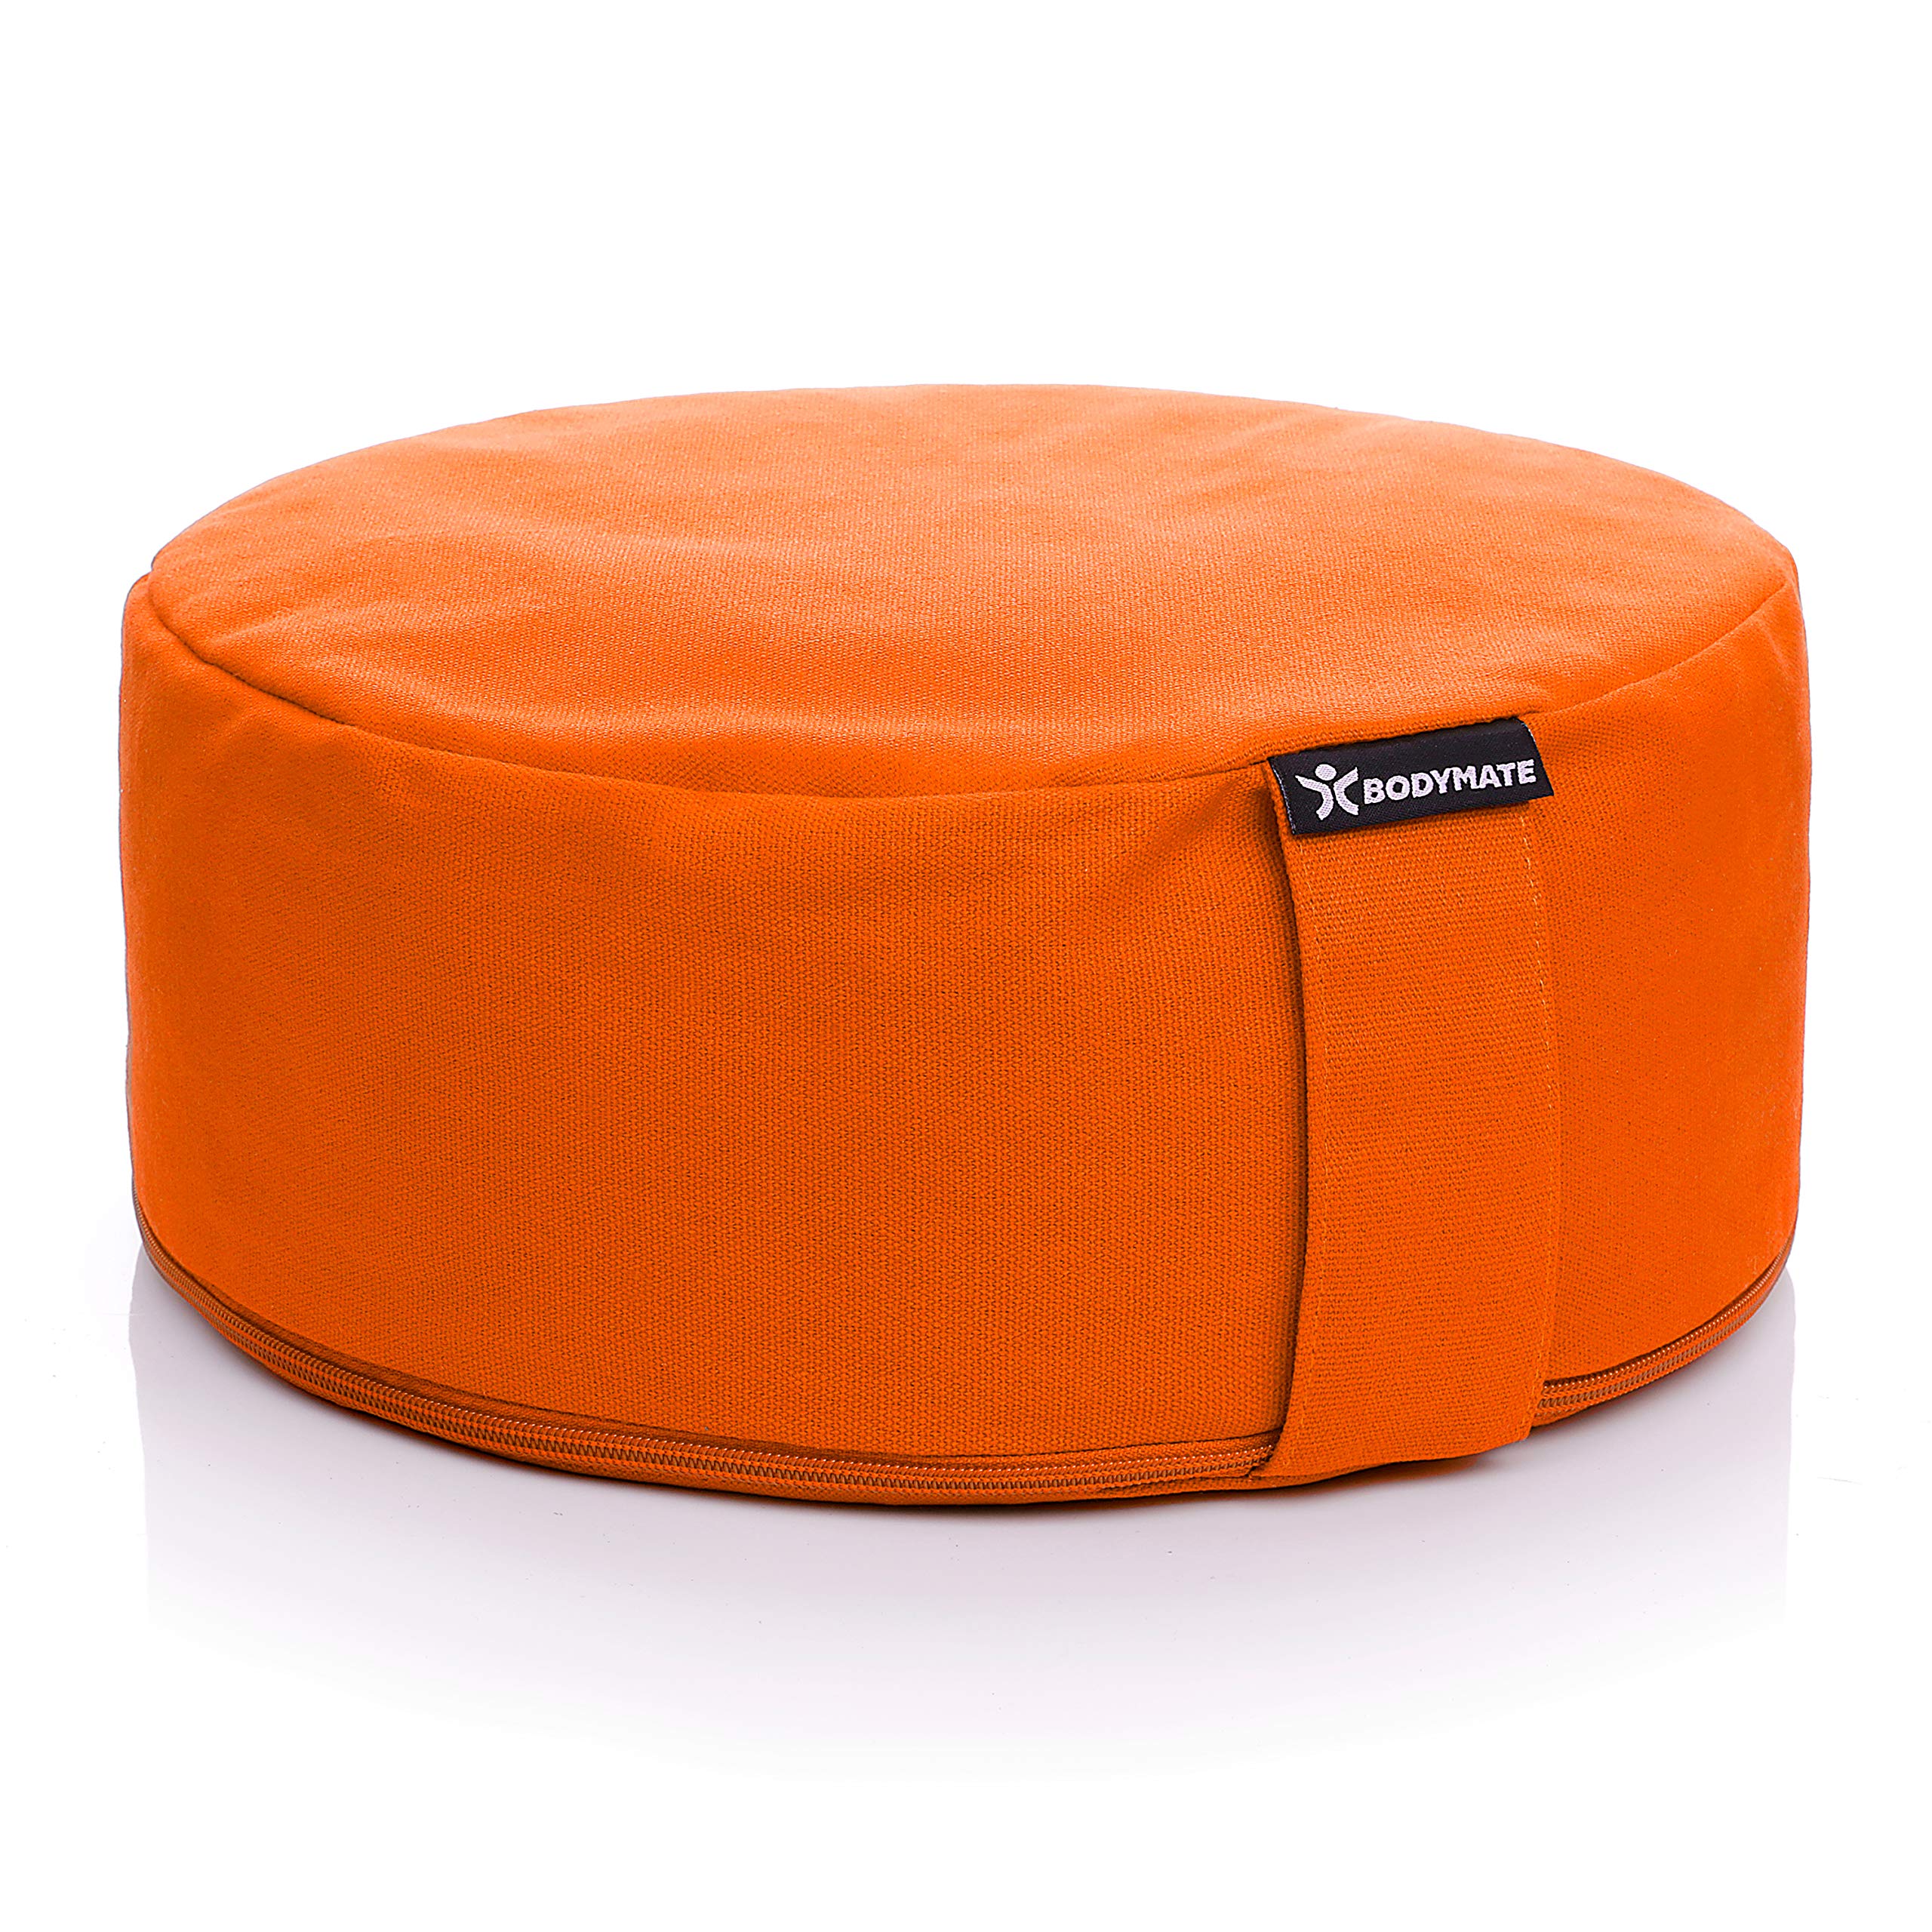 BODYMATE Yogakissen rund 31cm Durchmesser 13cm hoch Orange mit Buchweizen-Spelz Füllung – Maschinenwaschbarer Bezug aus 100% extra Dicker Baumwolle – Meditationskissen – Sitzkissen